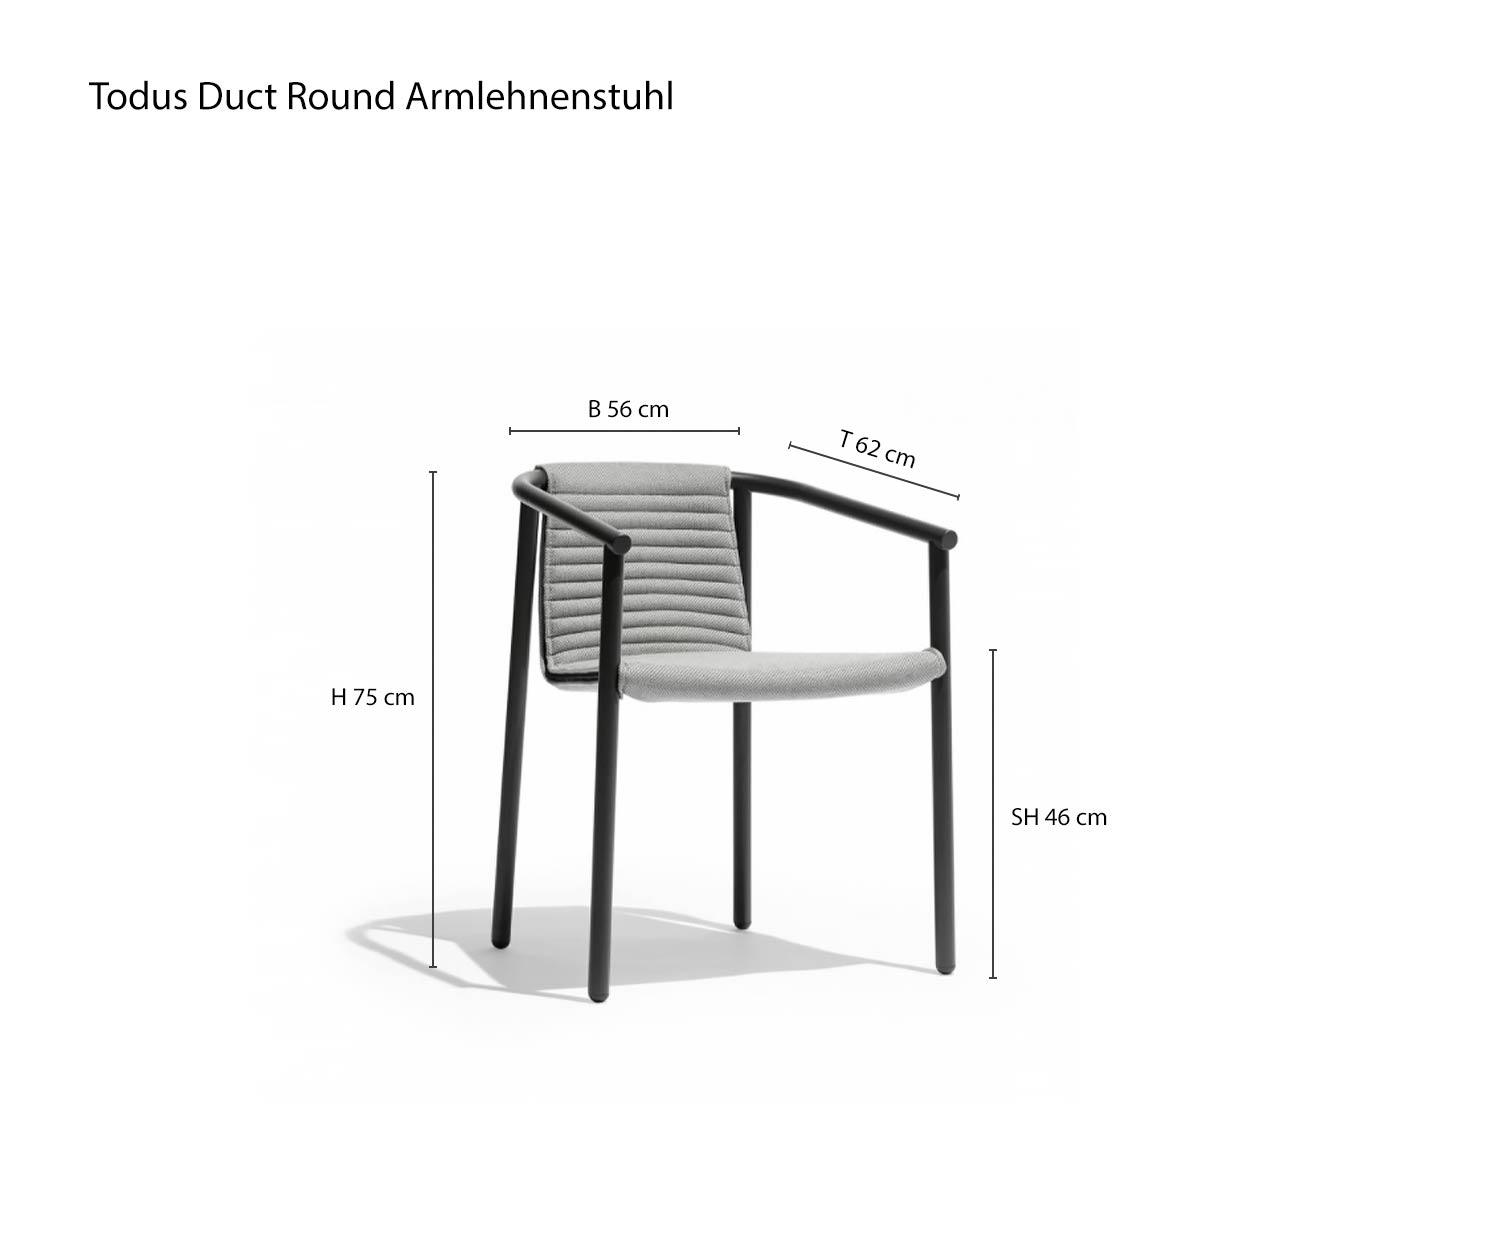 Croquis Dimensions Duct Round Design Chaise de jardin